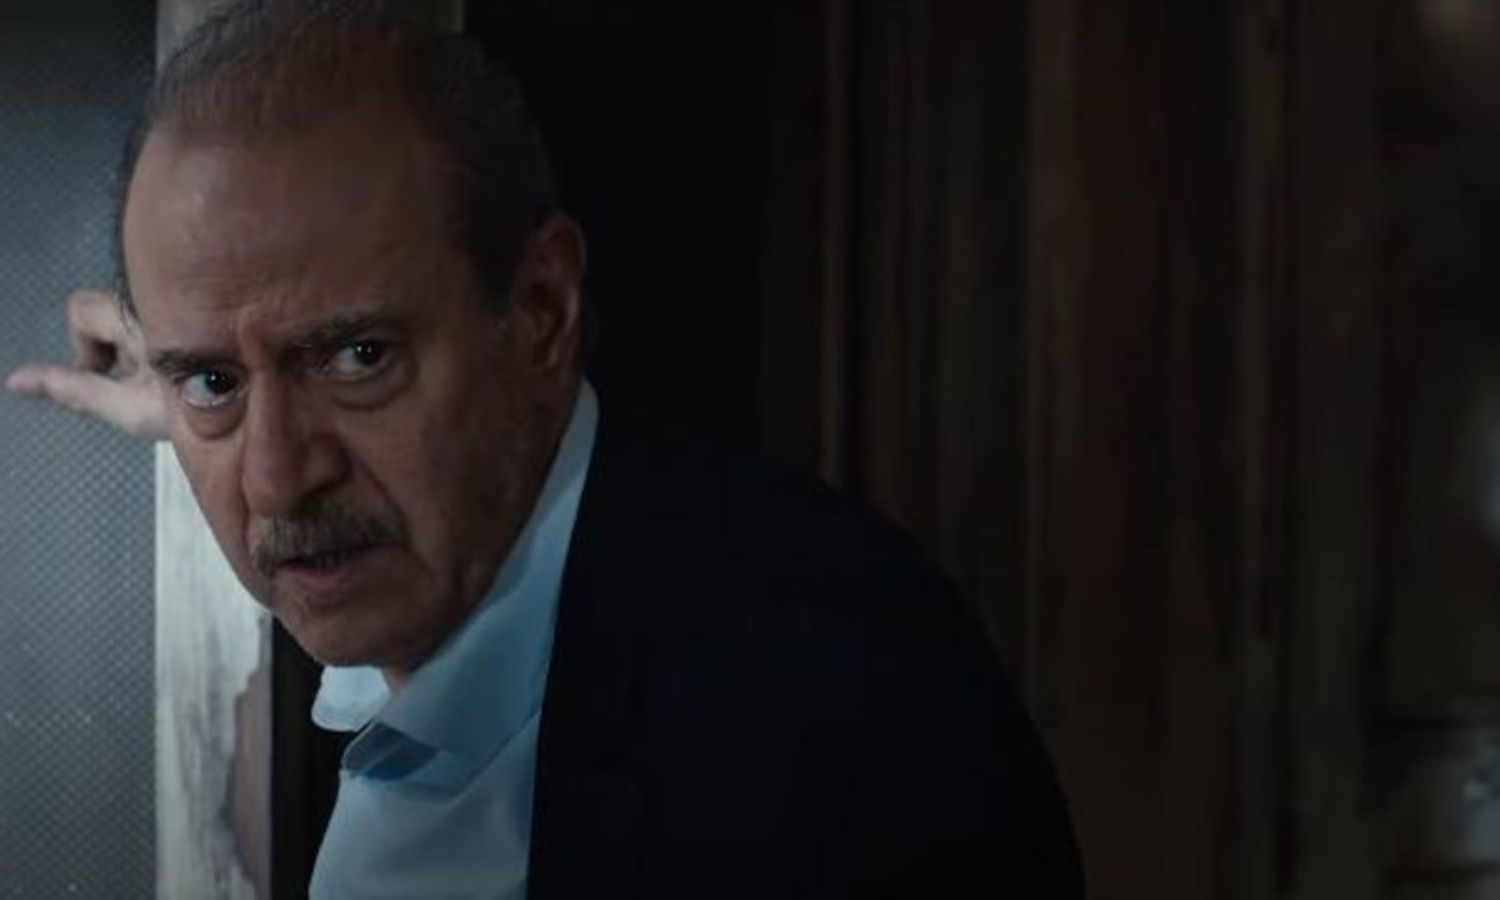 الممثل السوري بسام كوسا بدور القاضي يوسف مير علم، ثم يوسف الغريب، في أحد مشاهد مسلسل "الغريب"